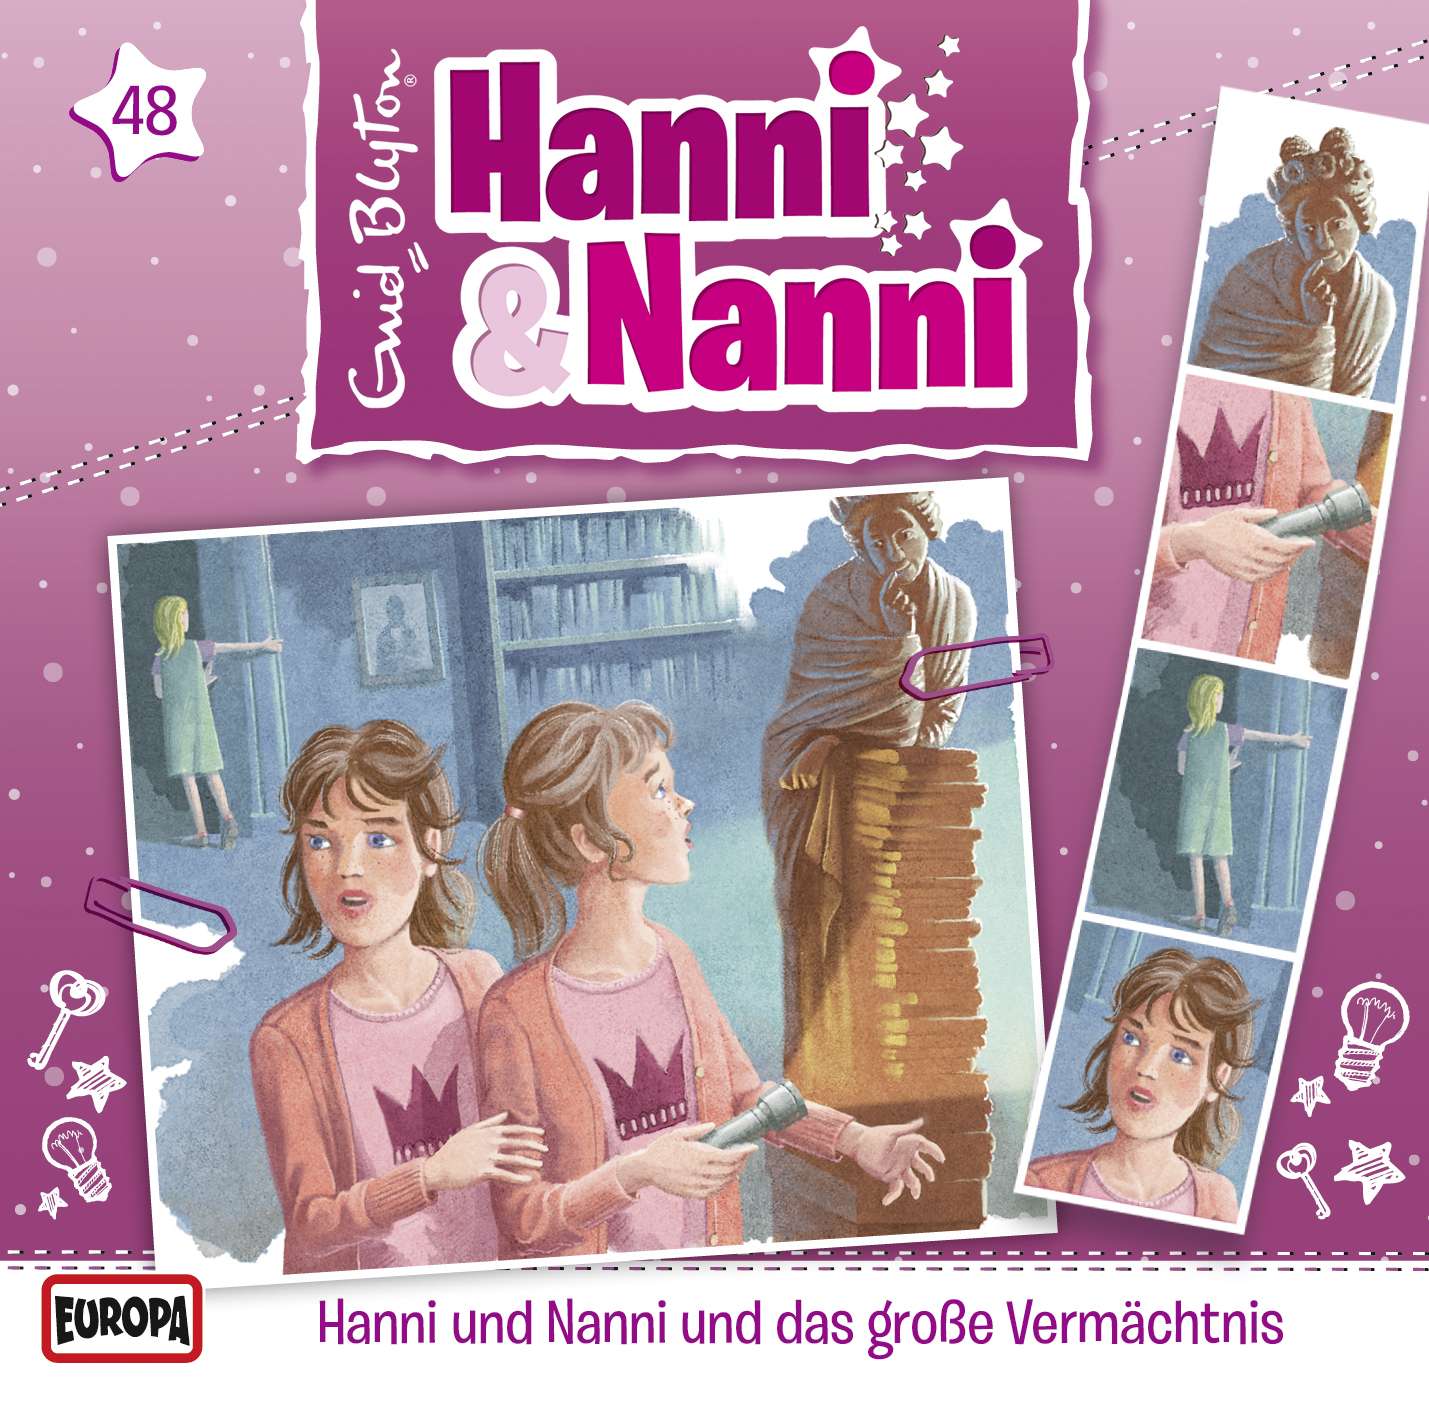 Hanni und Nanni - Hanni & Nanni und das große Vermächtnis